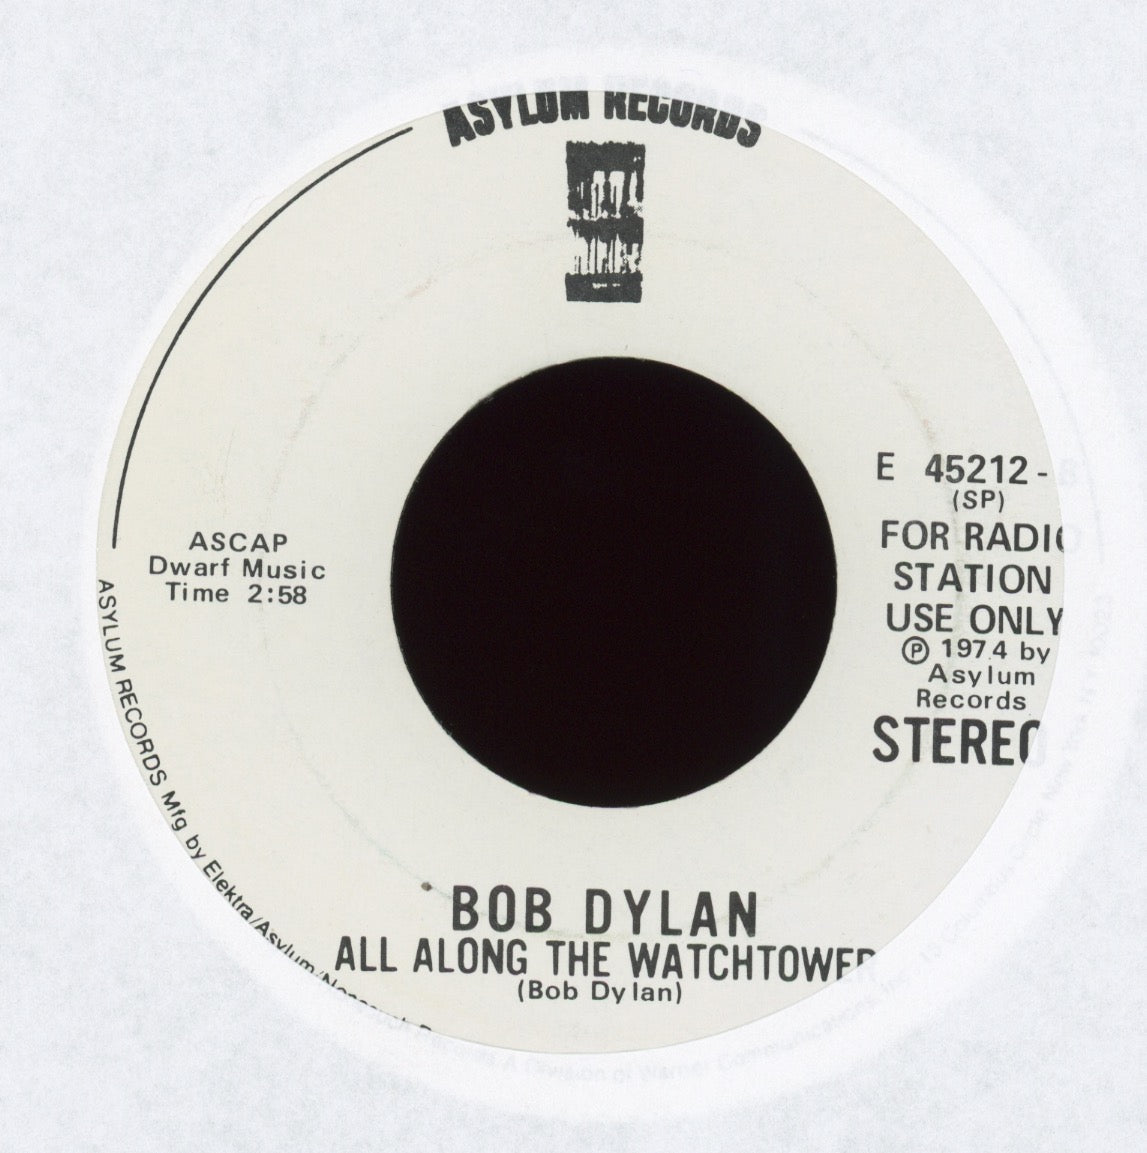 Bob Dylan - It Ain't Me, Babe on Asylum Promo